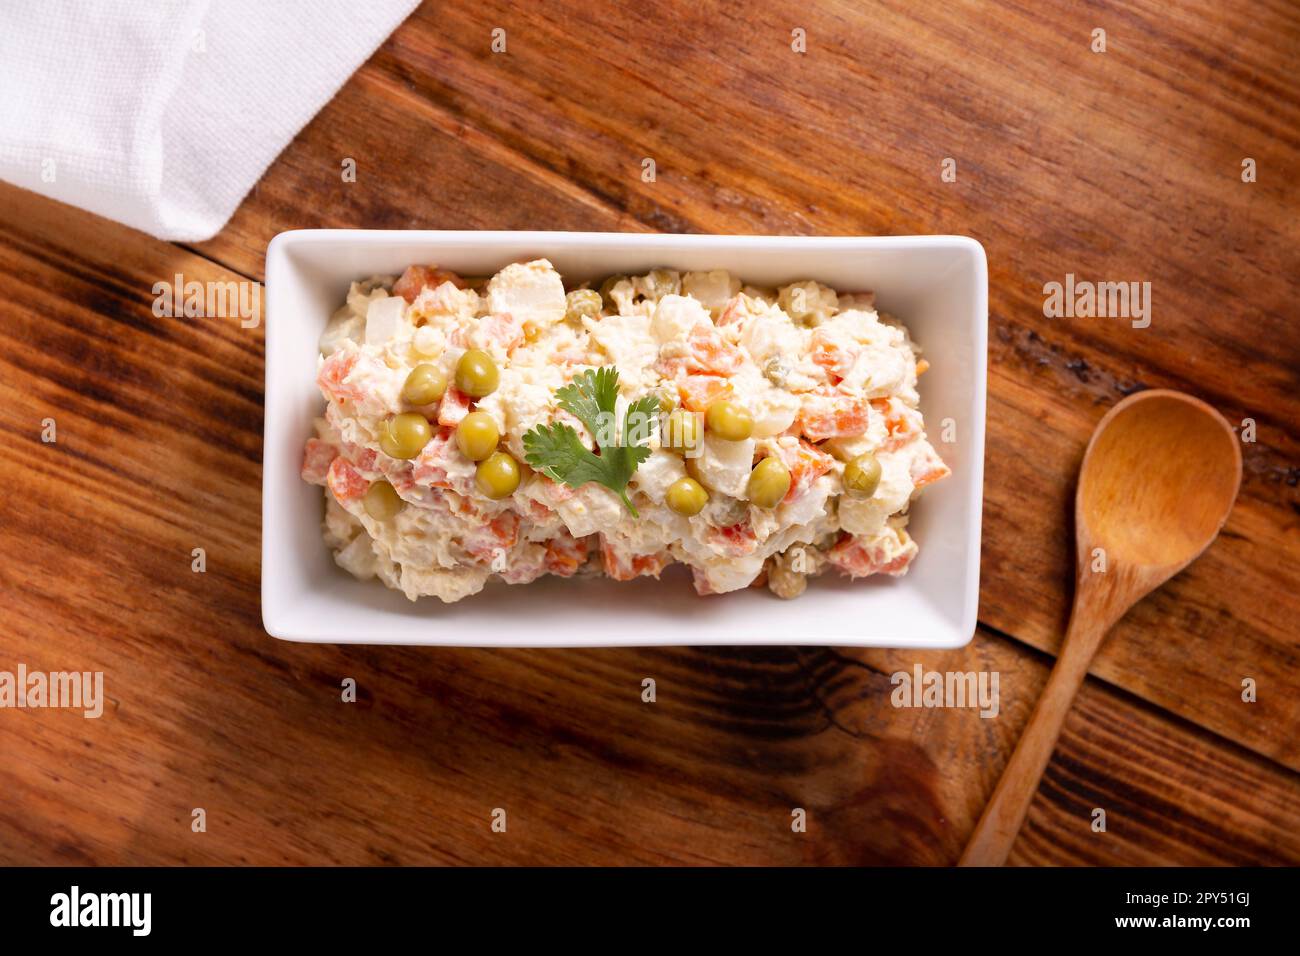 Russischer Salat, auch bekannt als Olivier-Salat. Das Gericht ist in mehreren Ländern sehr beliebt und die Hauptzutaten sind häufig Kartoffeln, Mayonnaise und vegetab Stockfoto